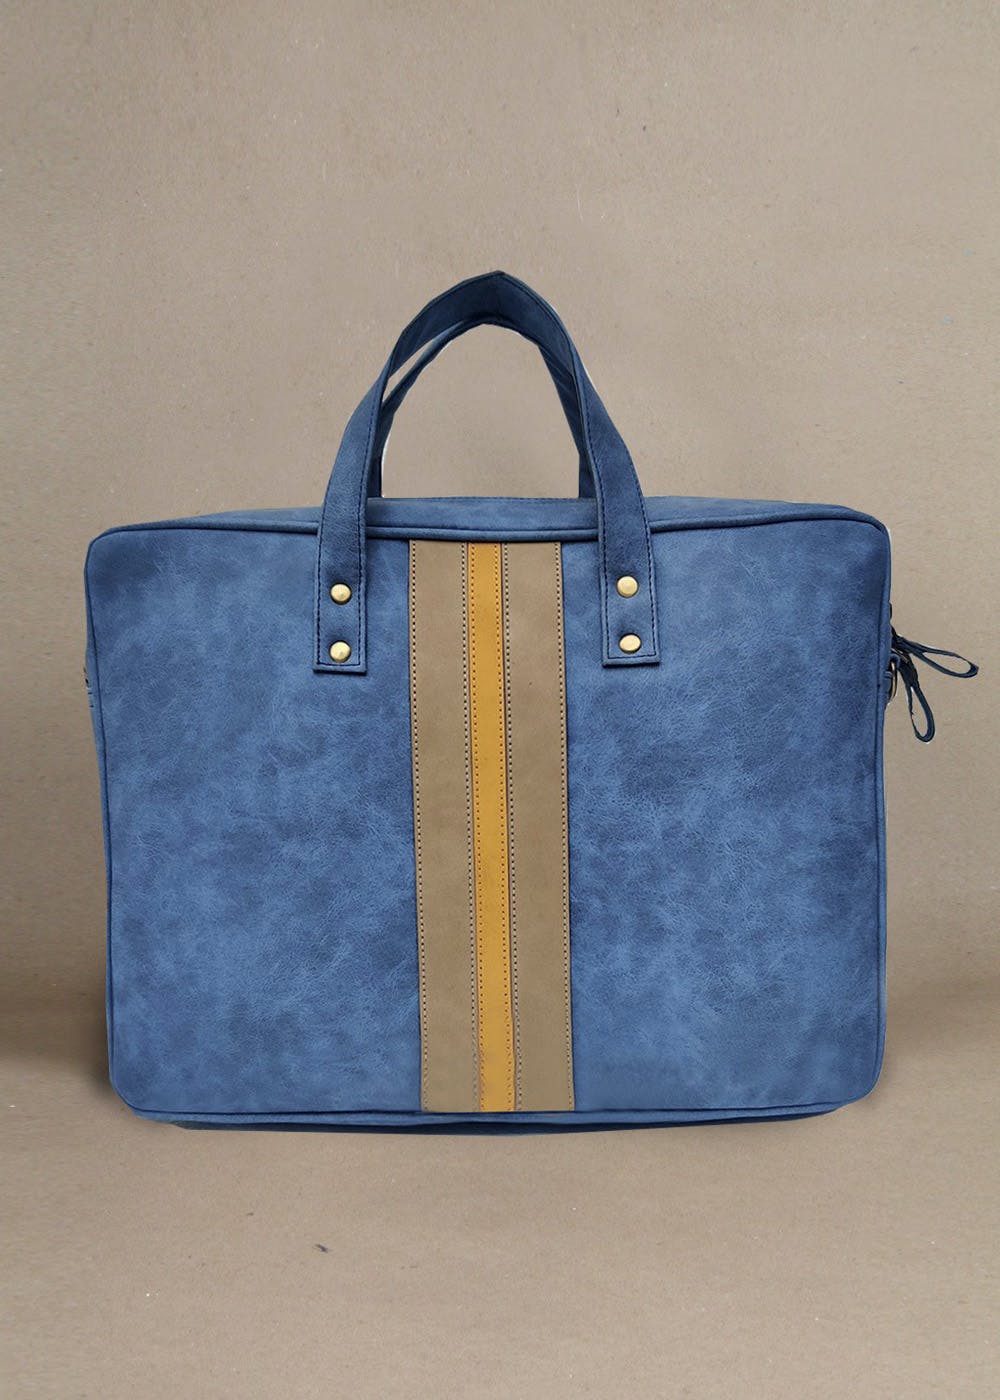 Get Vegan Laptop Traveler Bag ( Blue) at ₹ 2400 | LBB Shop